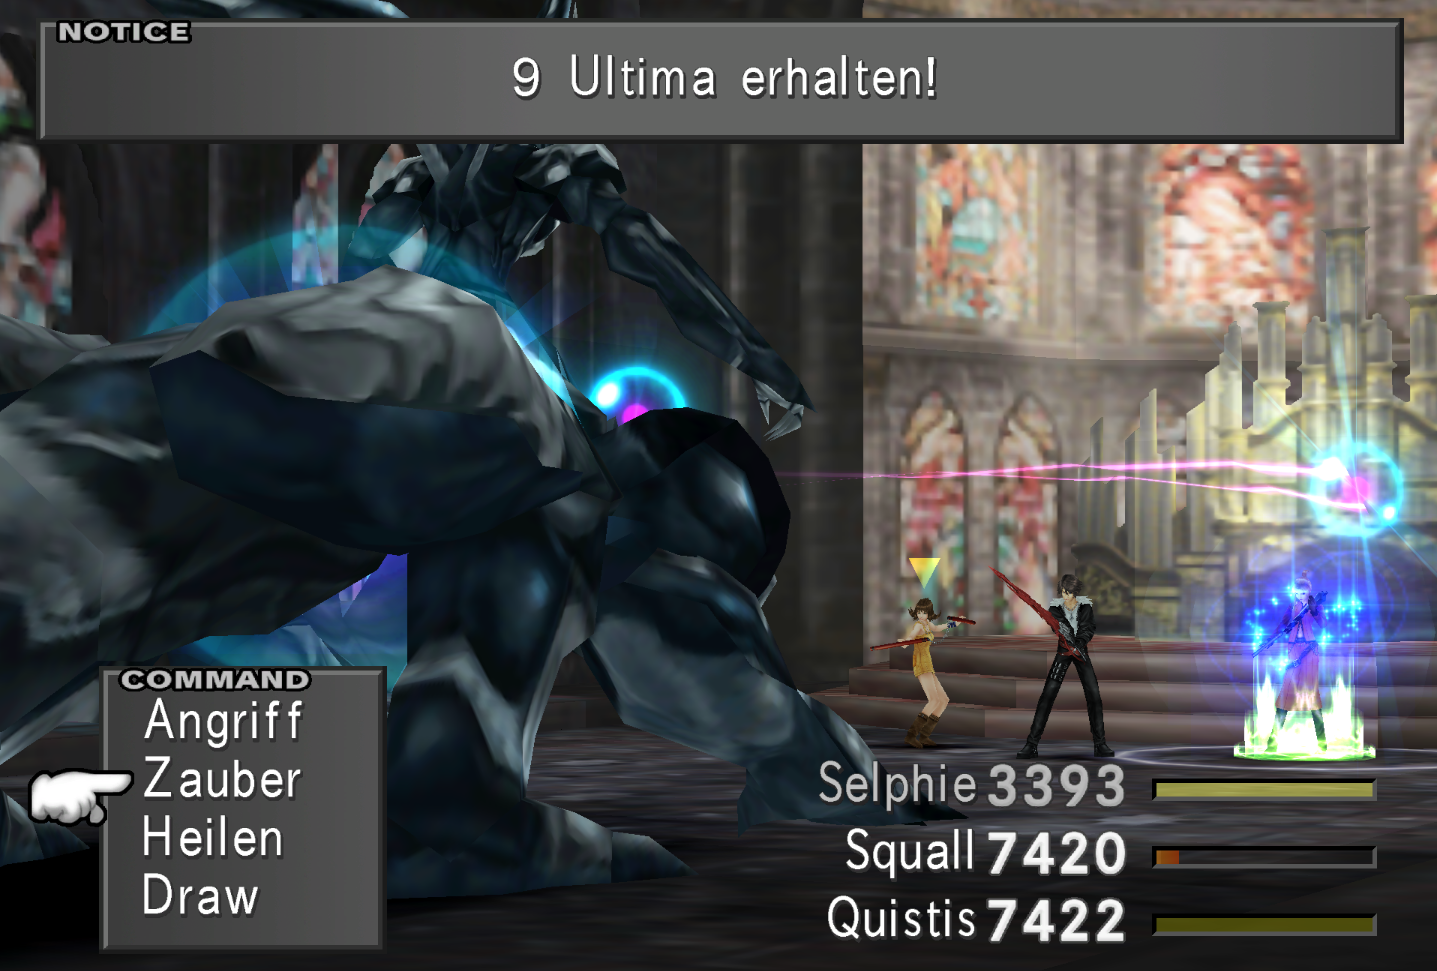 Selphie, Squall und Quistis kämpfen in einer Art Kathedrale gegen Omega Weapon, und entziehen dem Monster neun Ultima-Zauber.